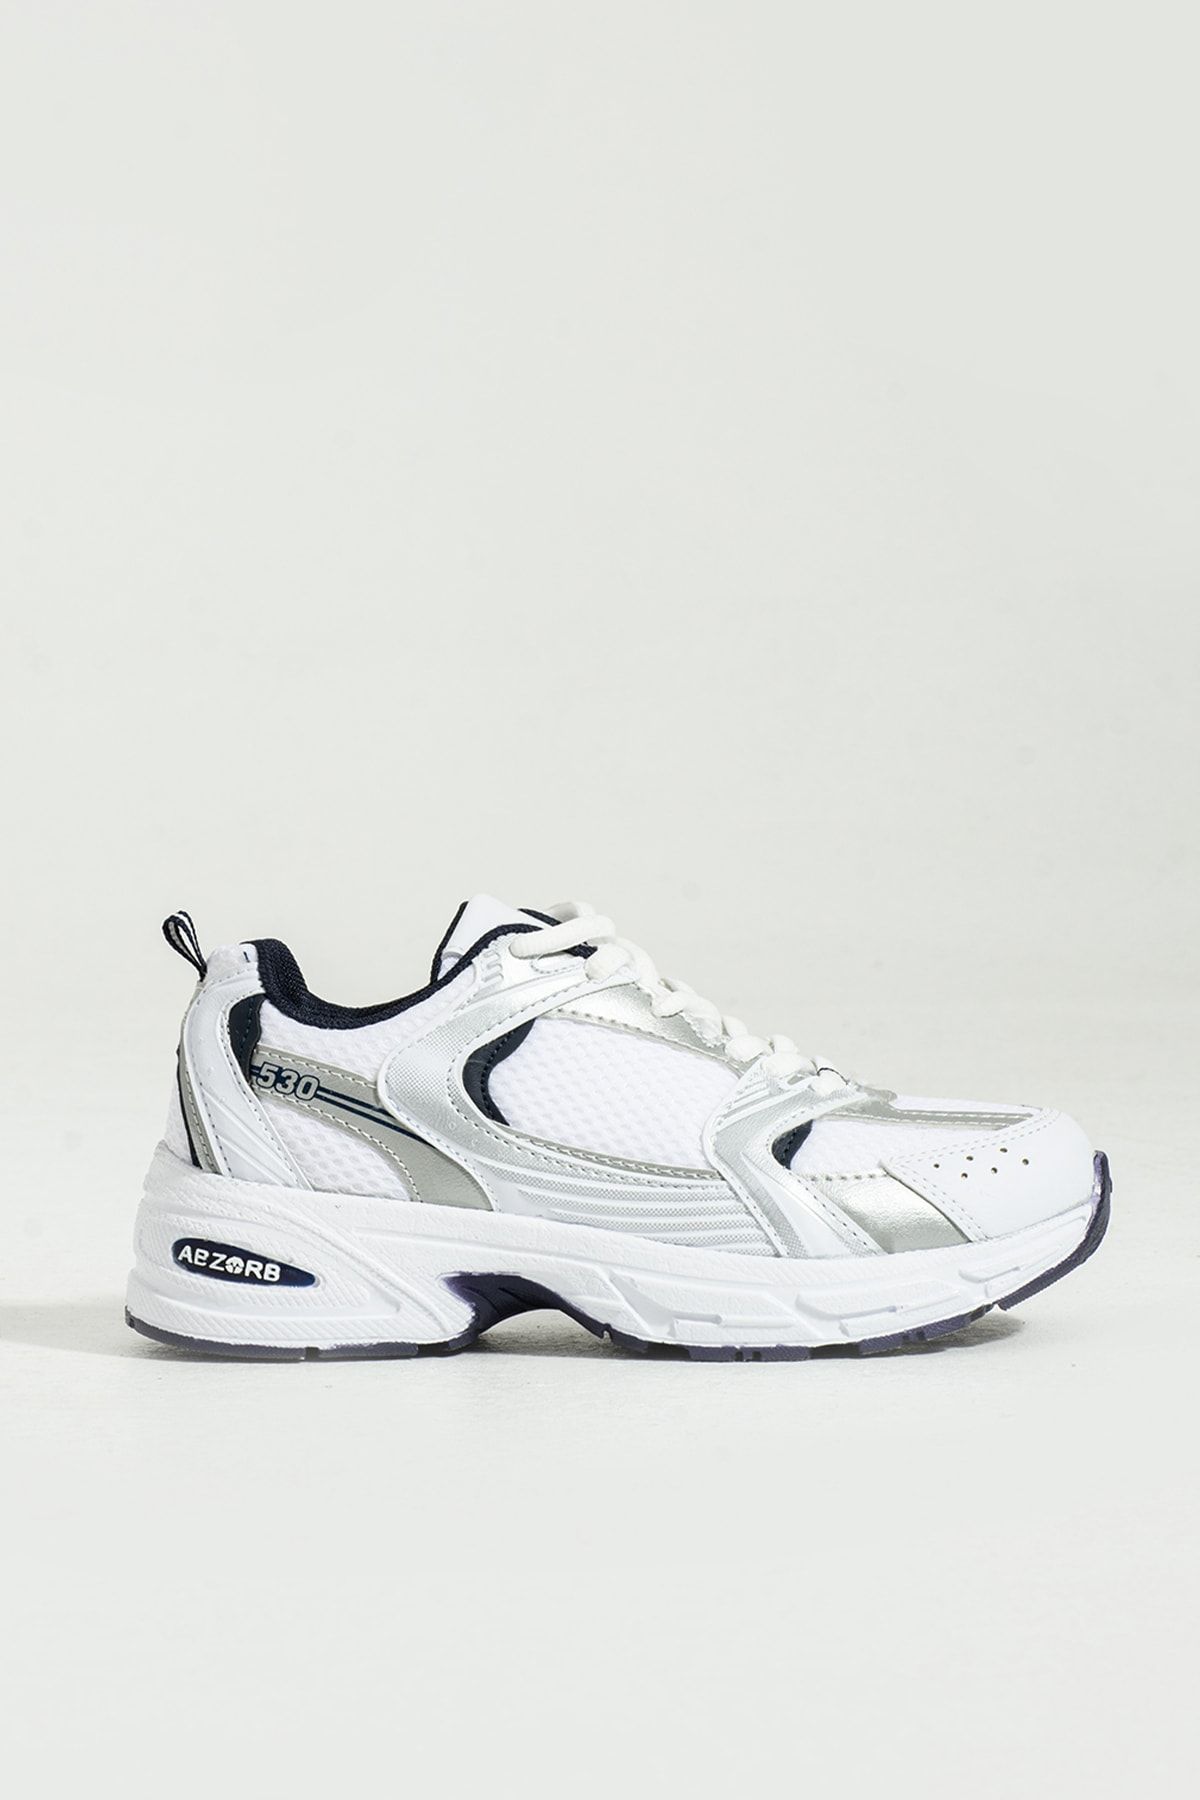 ICELAKE Thunder S30 Unisex Lacivert Beyaz Günlük Rahat Spor Ayakkabı Sneaker 888007l